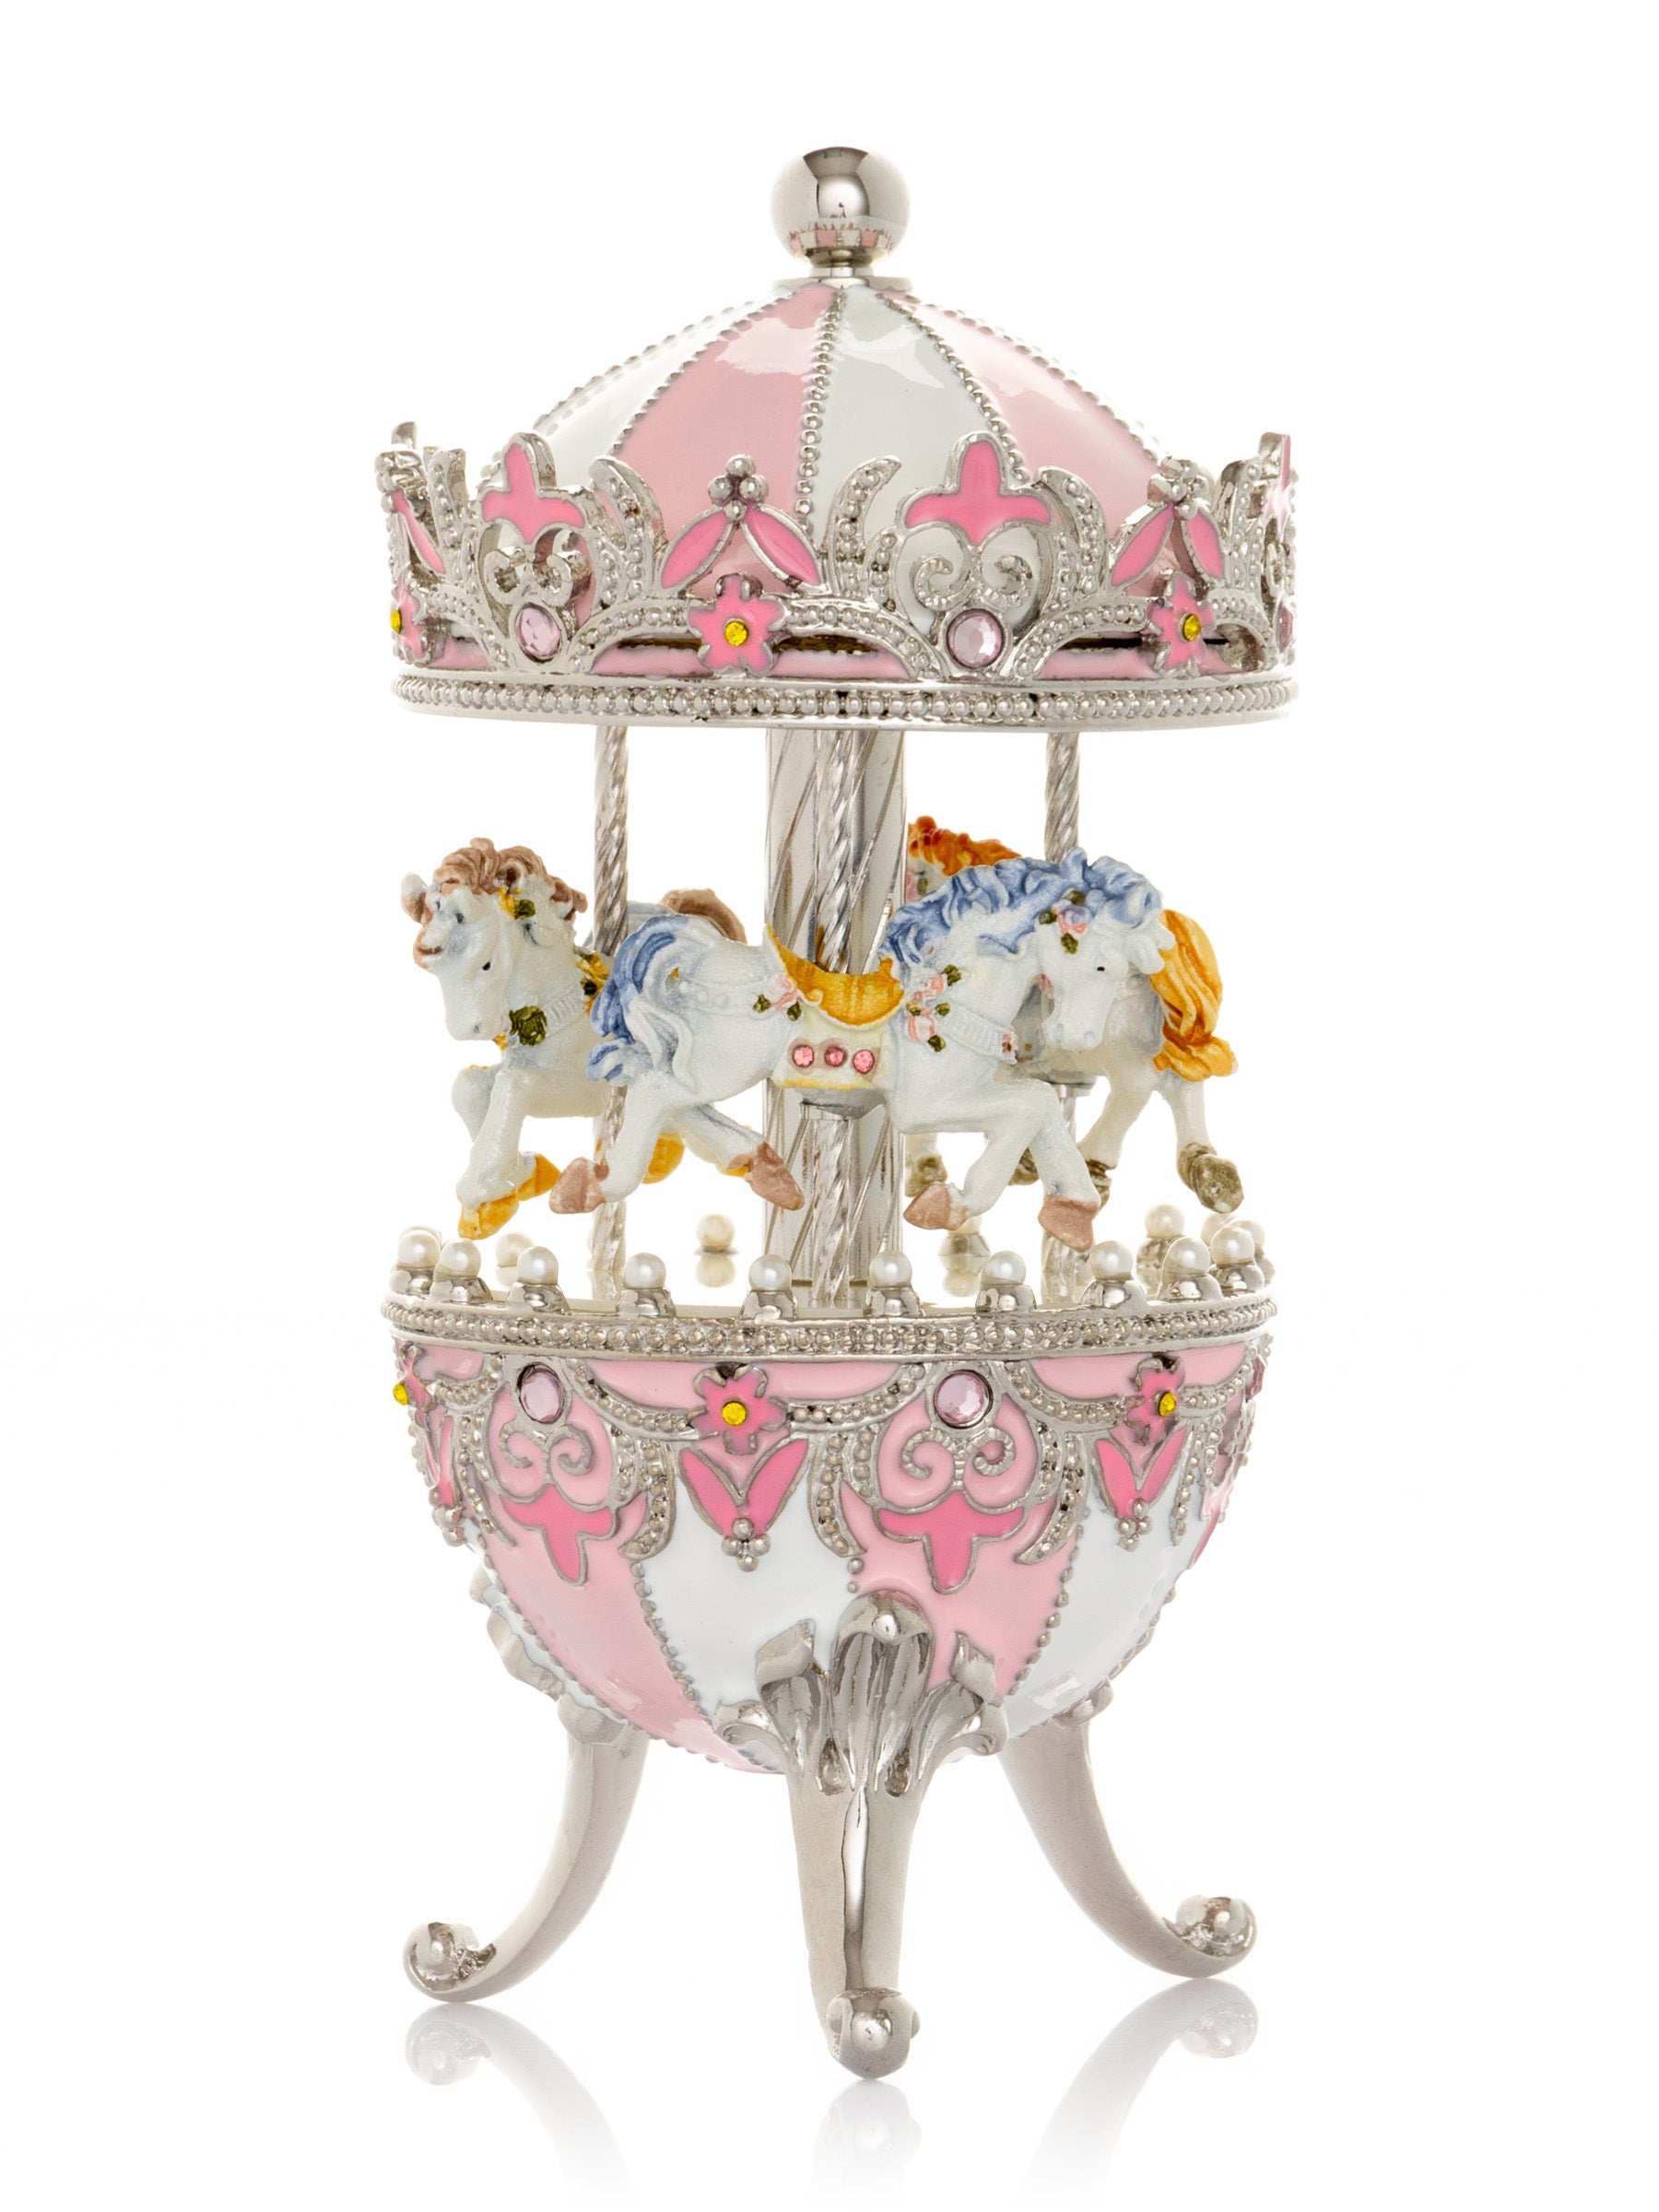 Oeuf Fabergé rose avec carrousel à chevaux à remonter